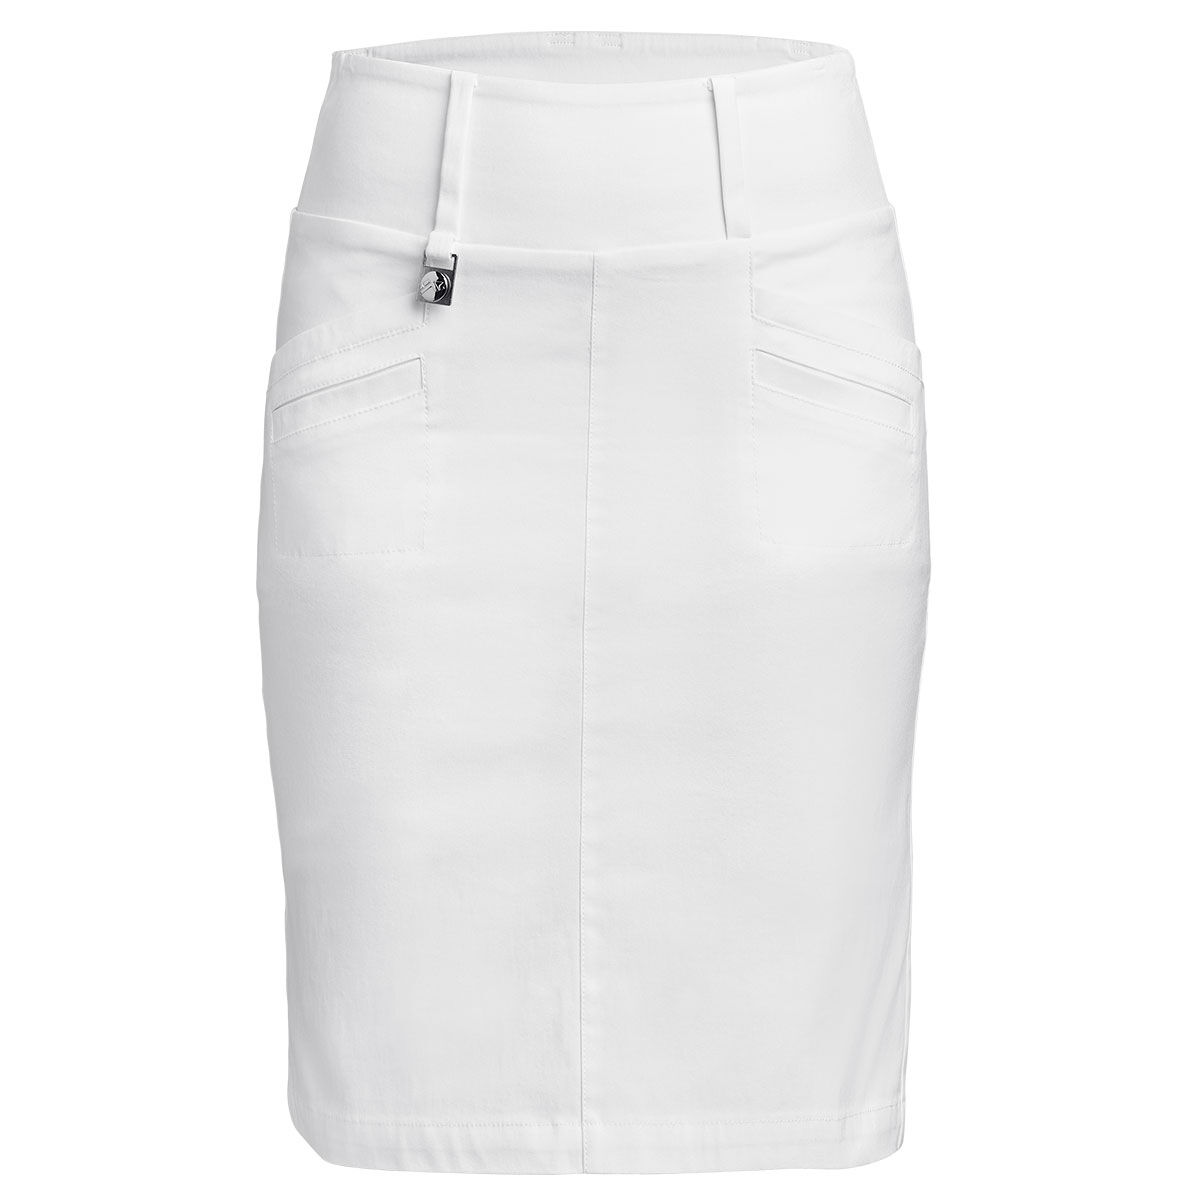 Rohnisch Women’s White Embrace Stretch Golf Skorts, Size: 10 | American Golf